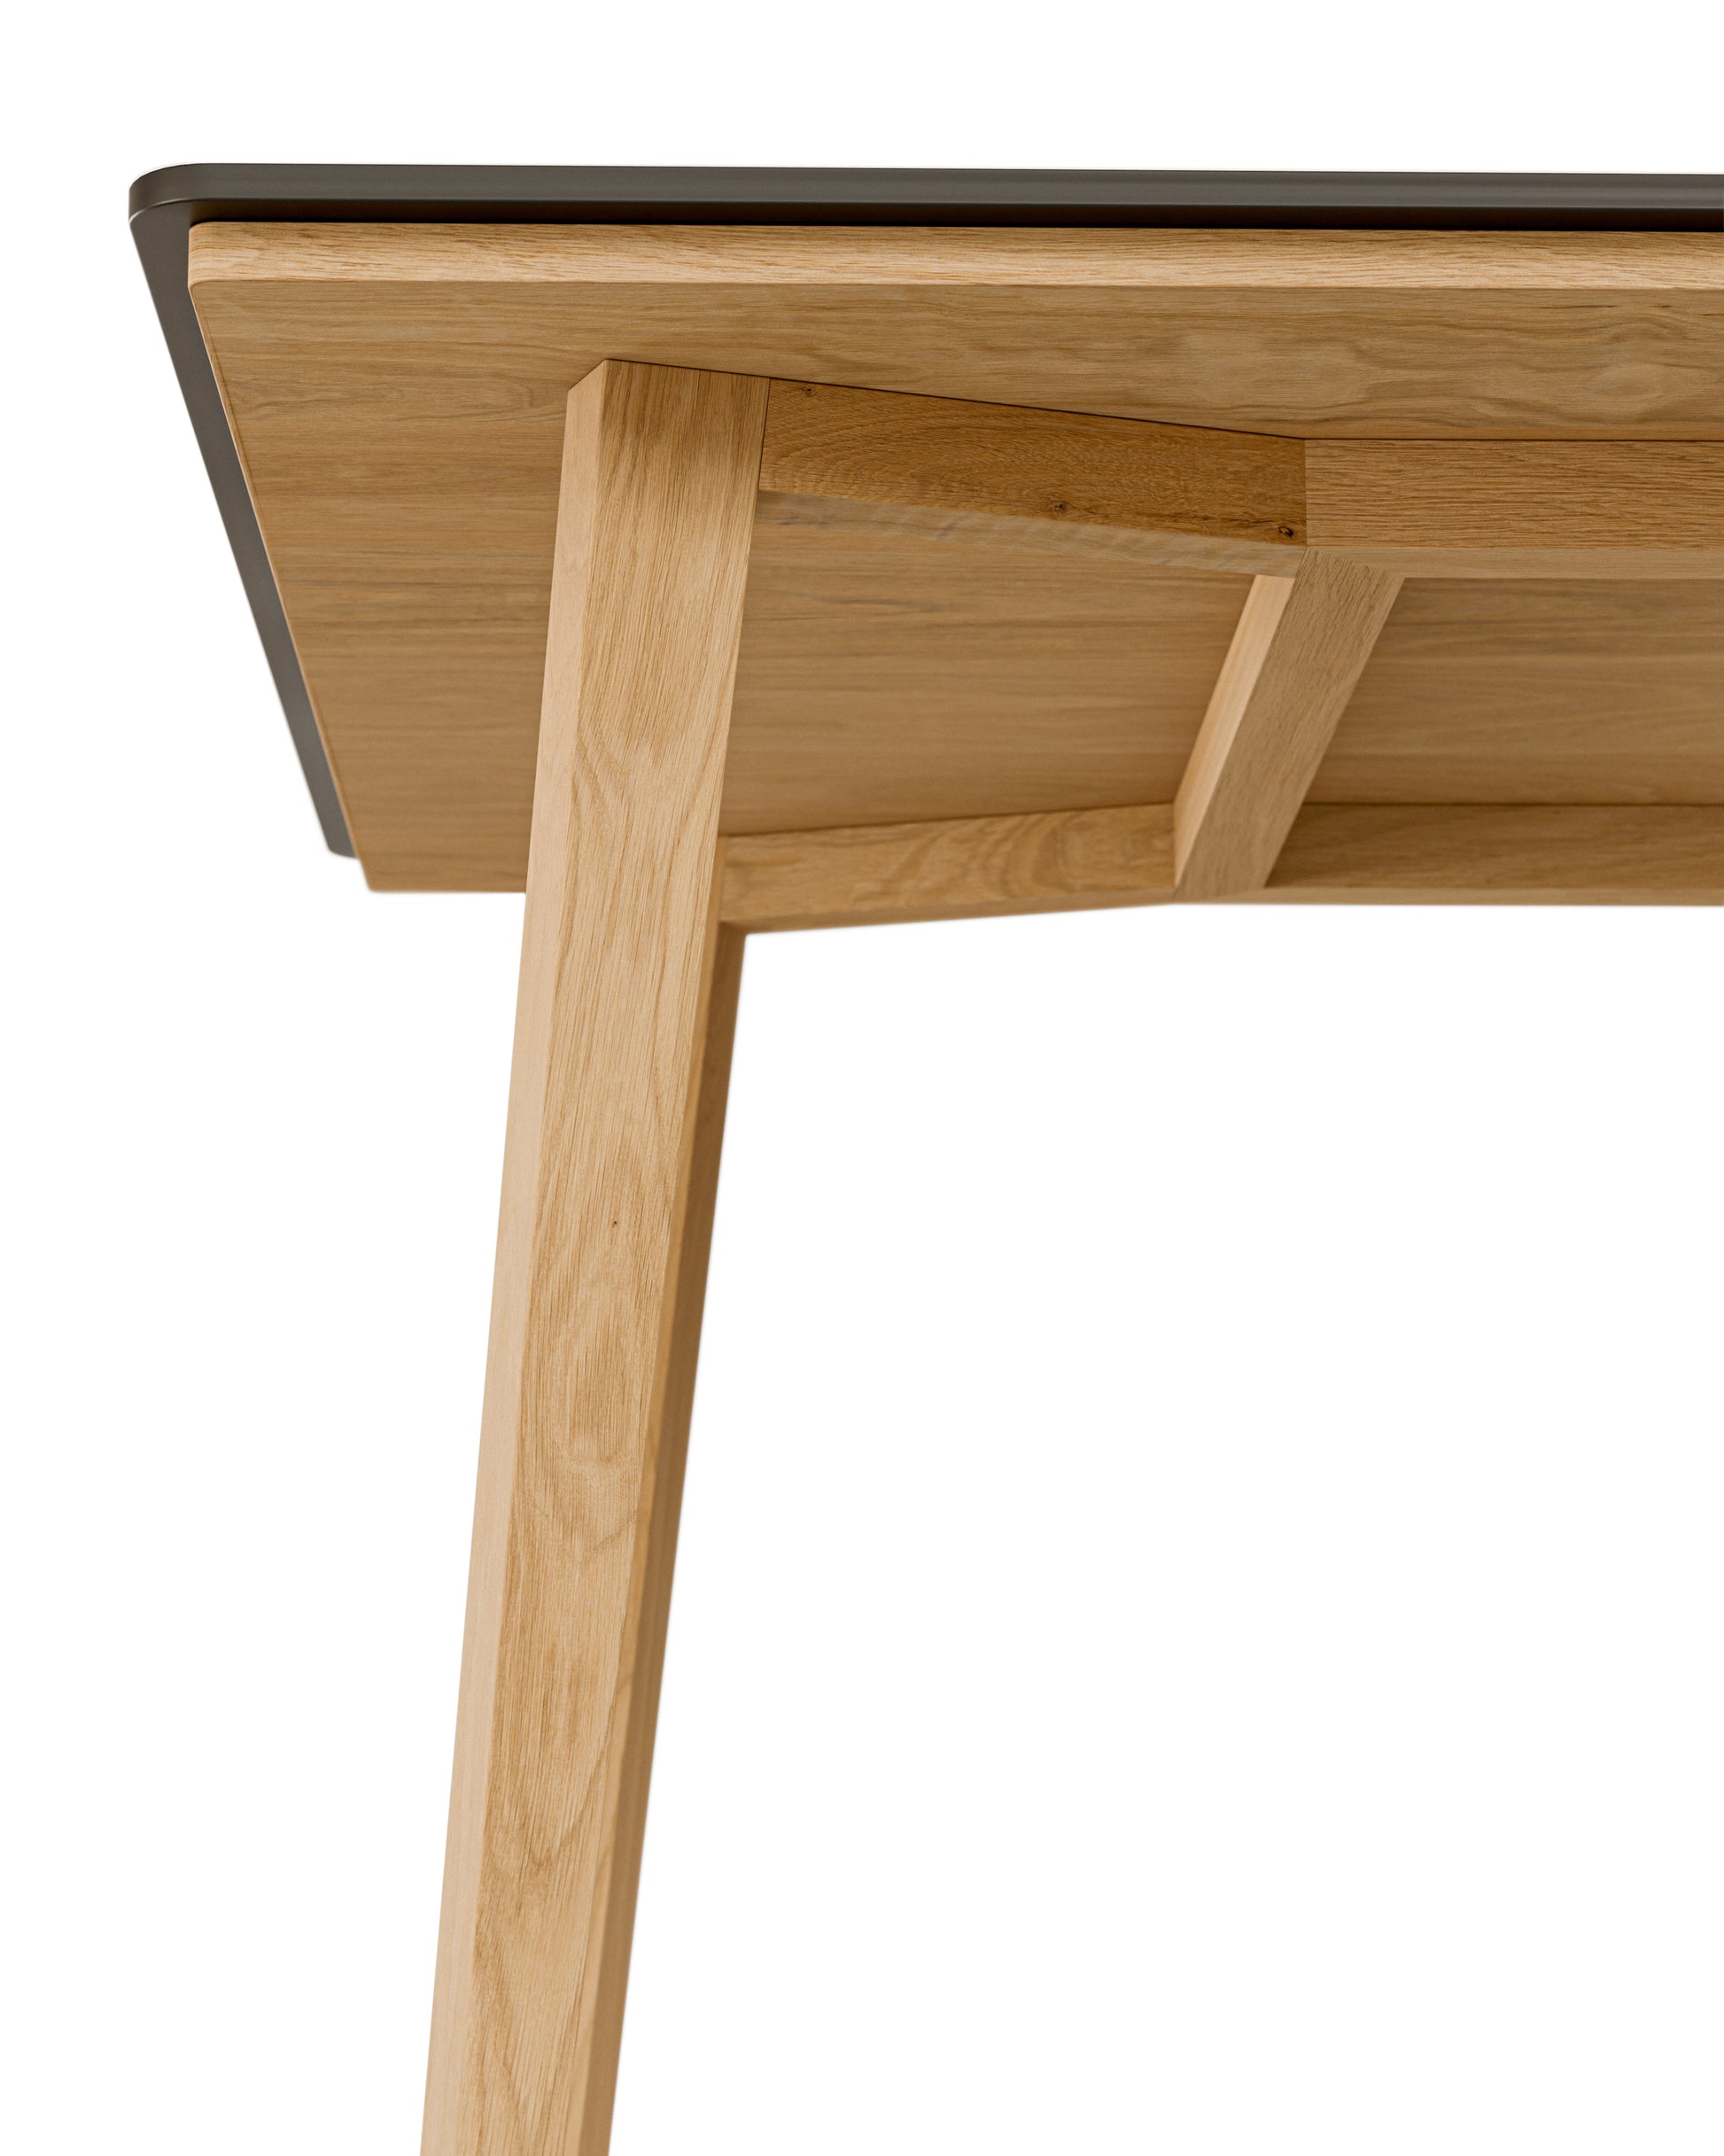 Esstisch in Eiche und schwarzer Tischplatte:Elegante Verbindungstechnik:Das Tischgestell wird von oben durch die Eicheplatte festgeschraubt. Damit ist es äußerst robust und es sind keine Schraubenlöcher zu sehen.